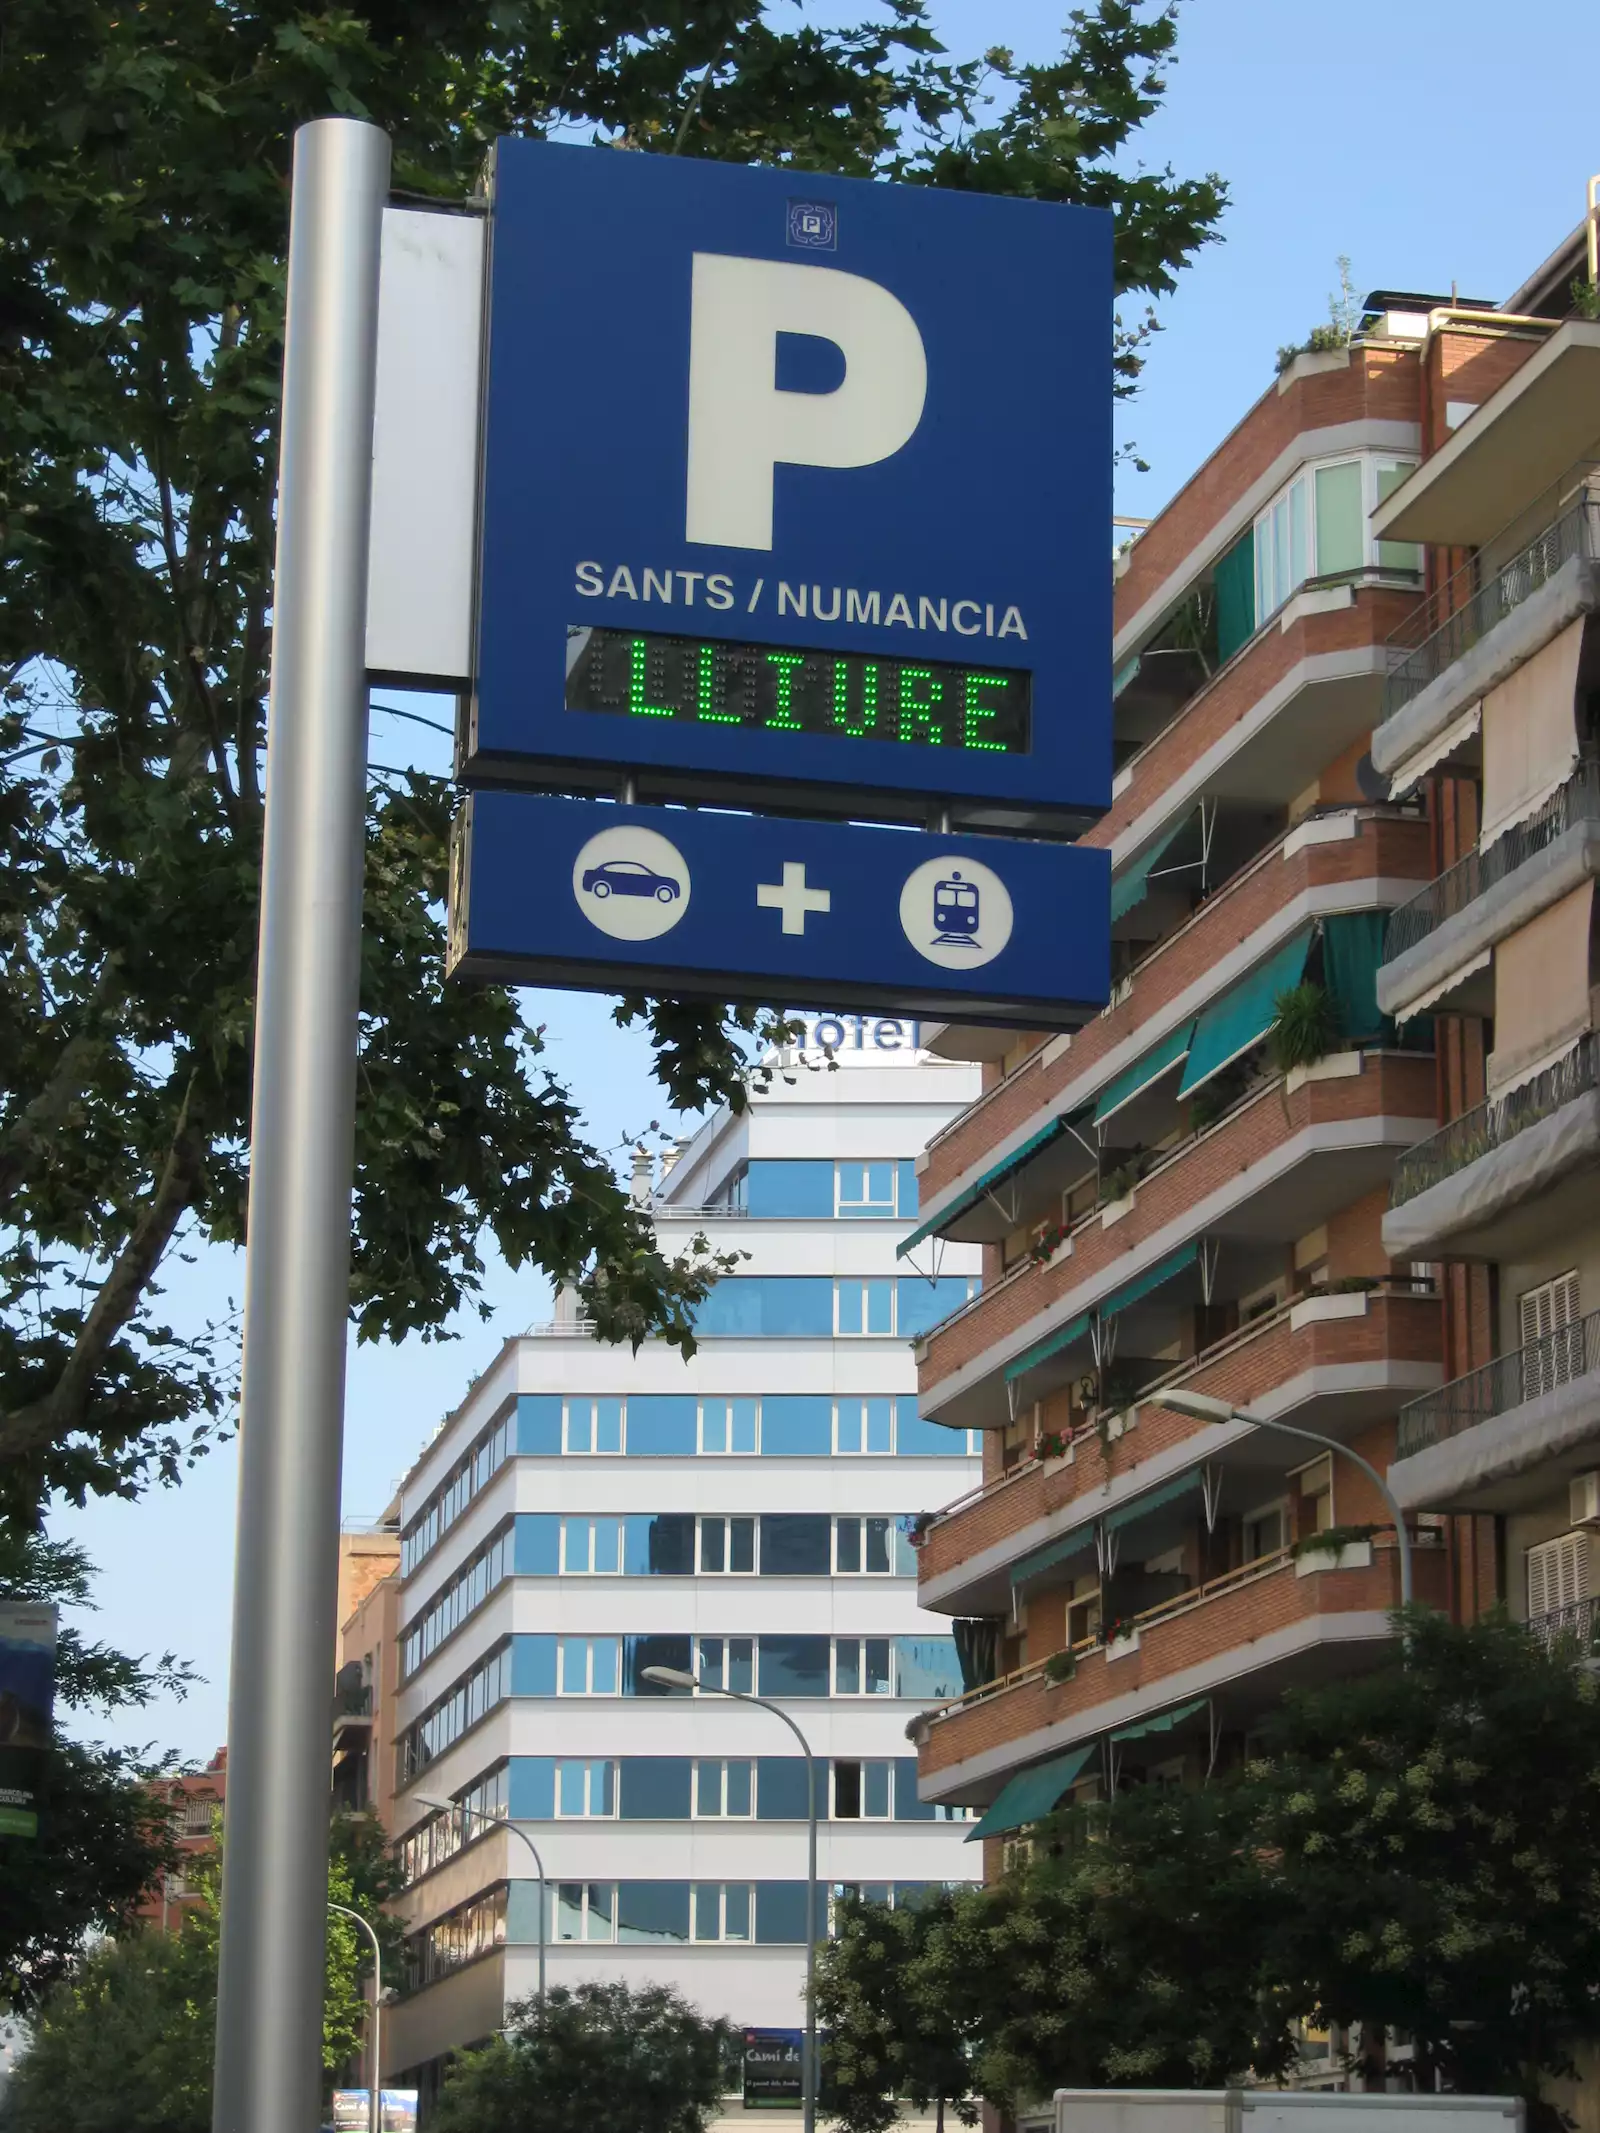 aparcamiento sants numancia barcelona